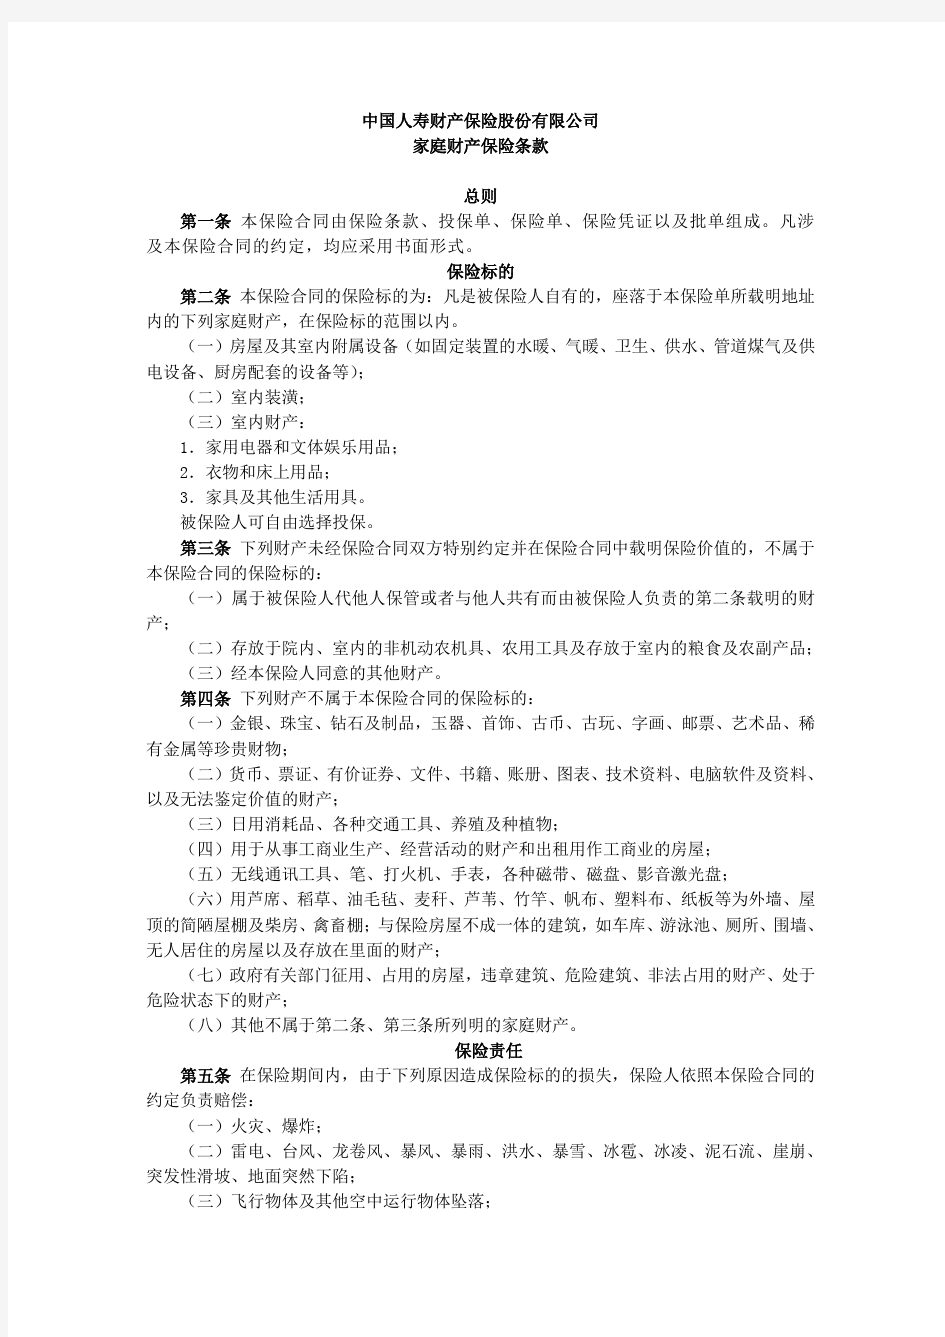 中国人寿财产保险股份有限公司家庭财产保险条款.pdf